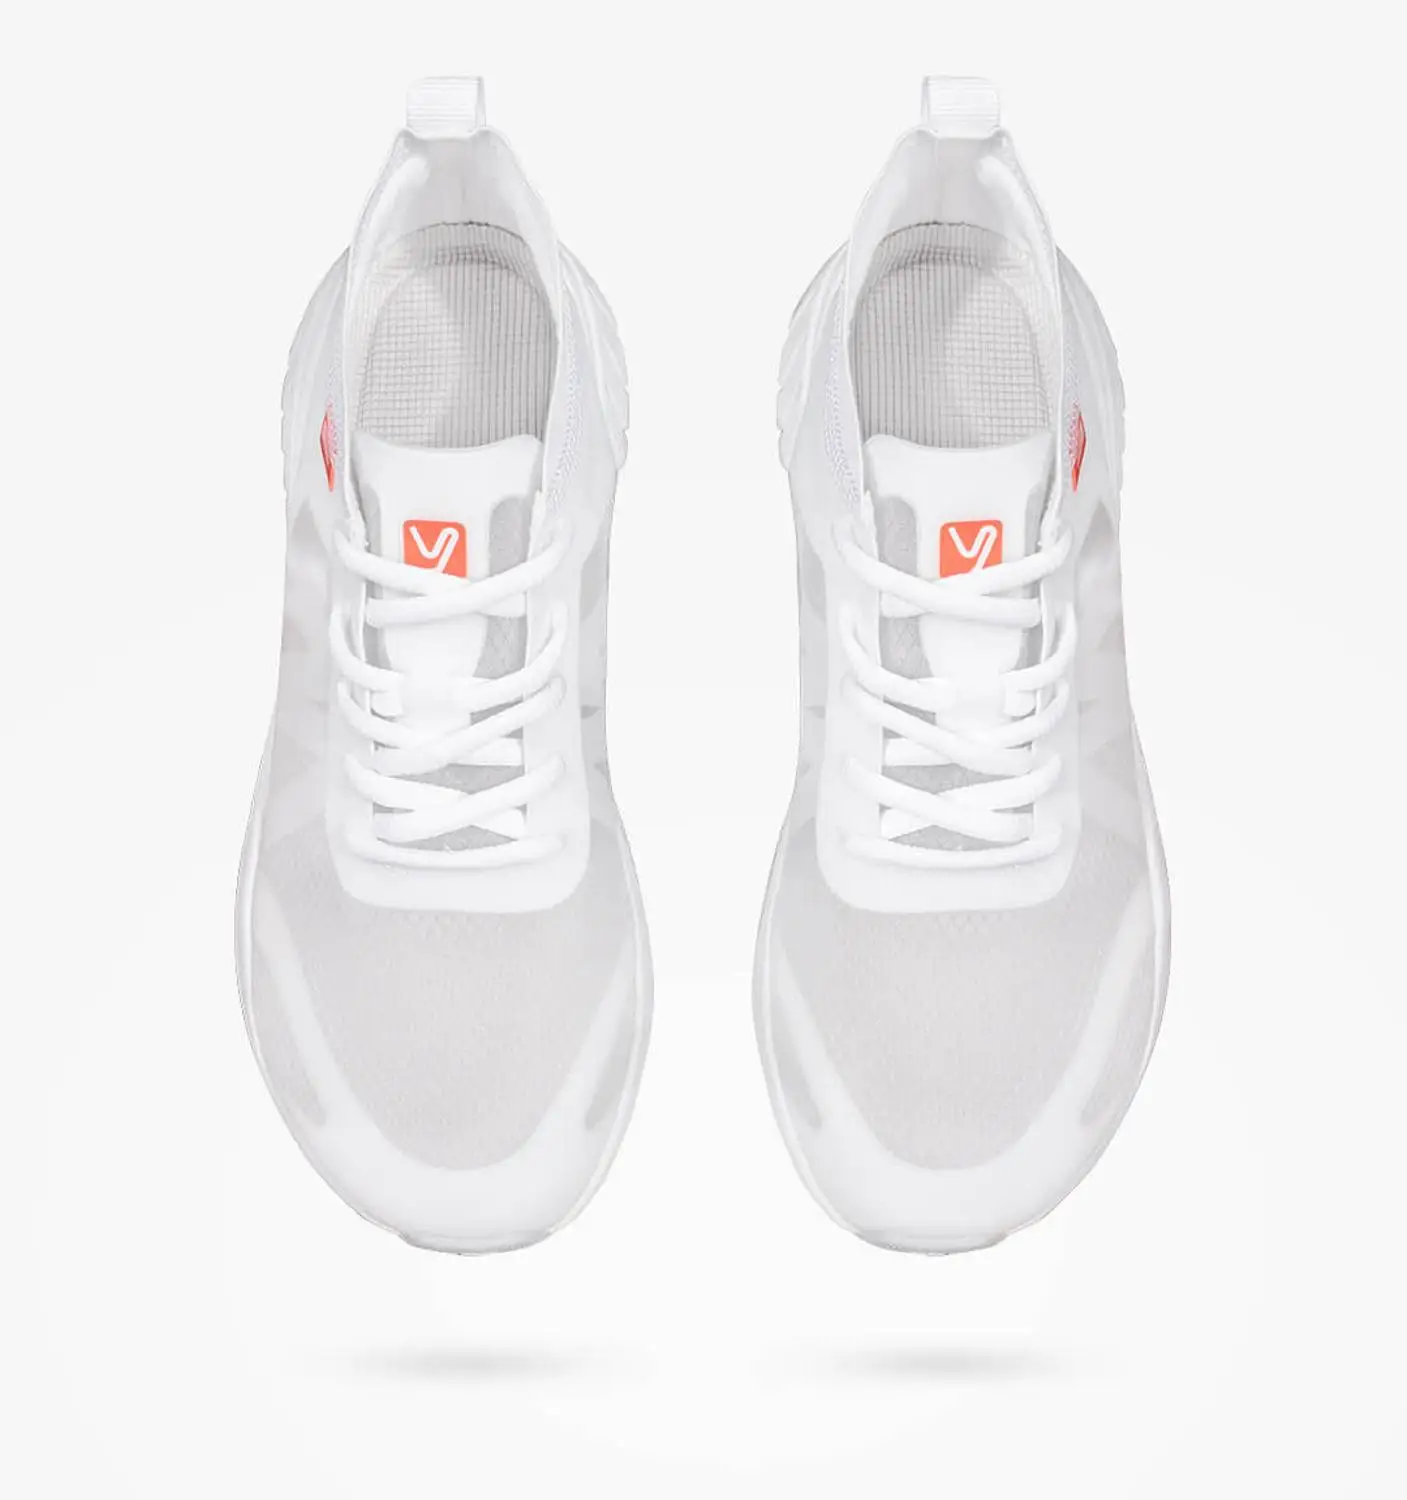 Xiaomi YUNCOO Легкая спортивная обувь из прозрачной моно пряжи легкая и быстросохнущая Мужская и женская дышащая повседневная обувь - Цвет: white 35